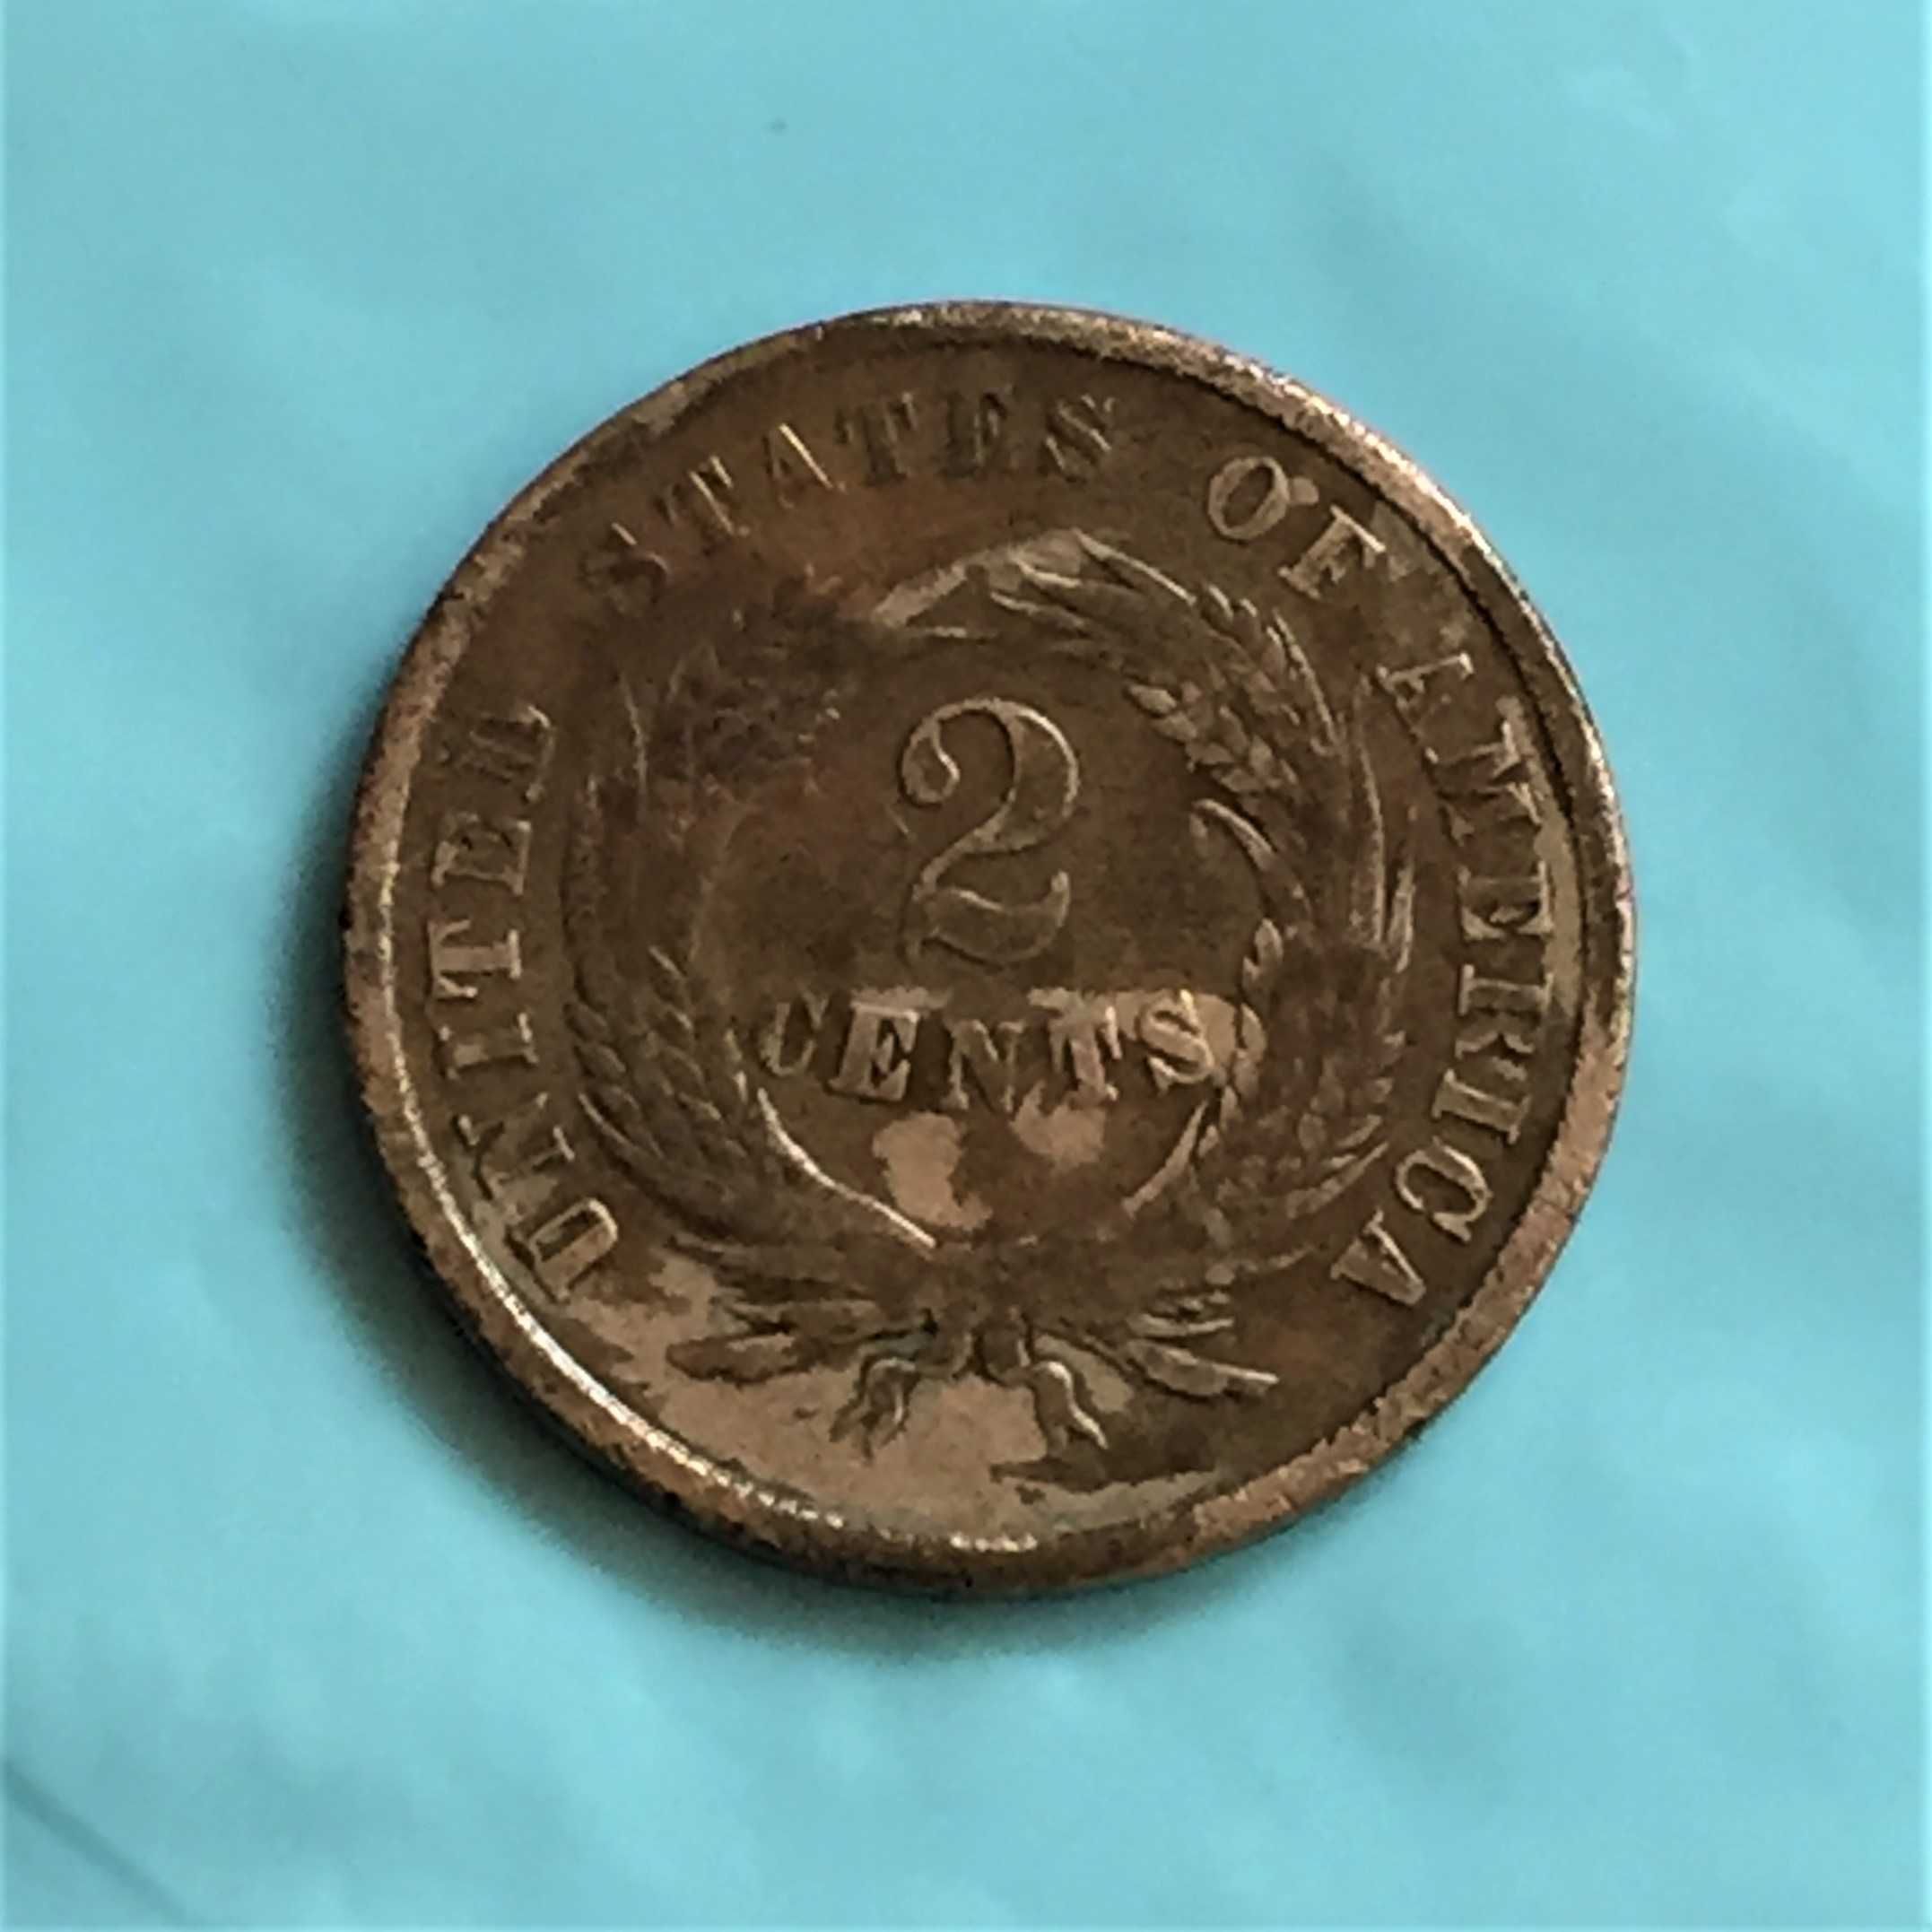 USA - 2 Cents 1865 - liga de cobre, estanho e zinco - 23mm